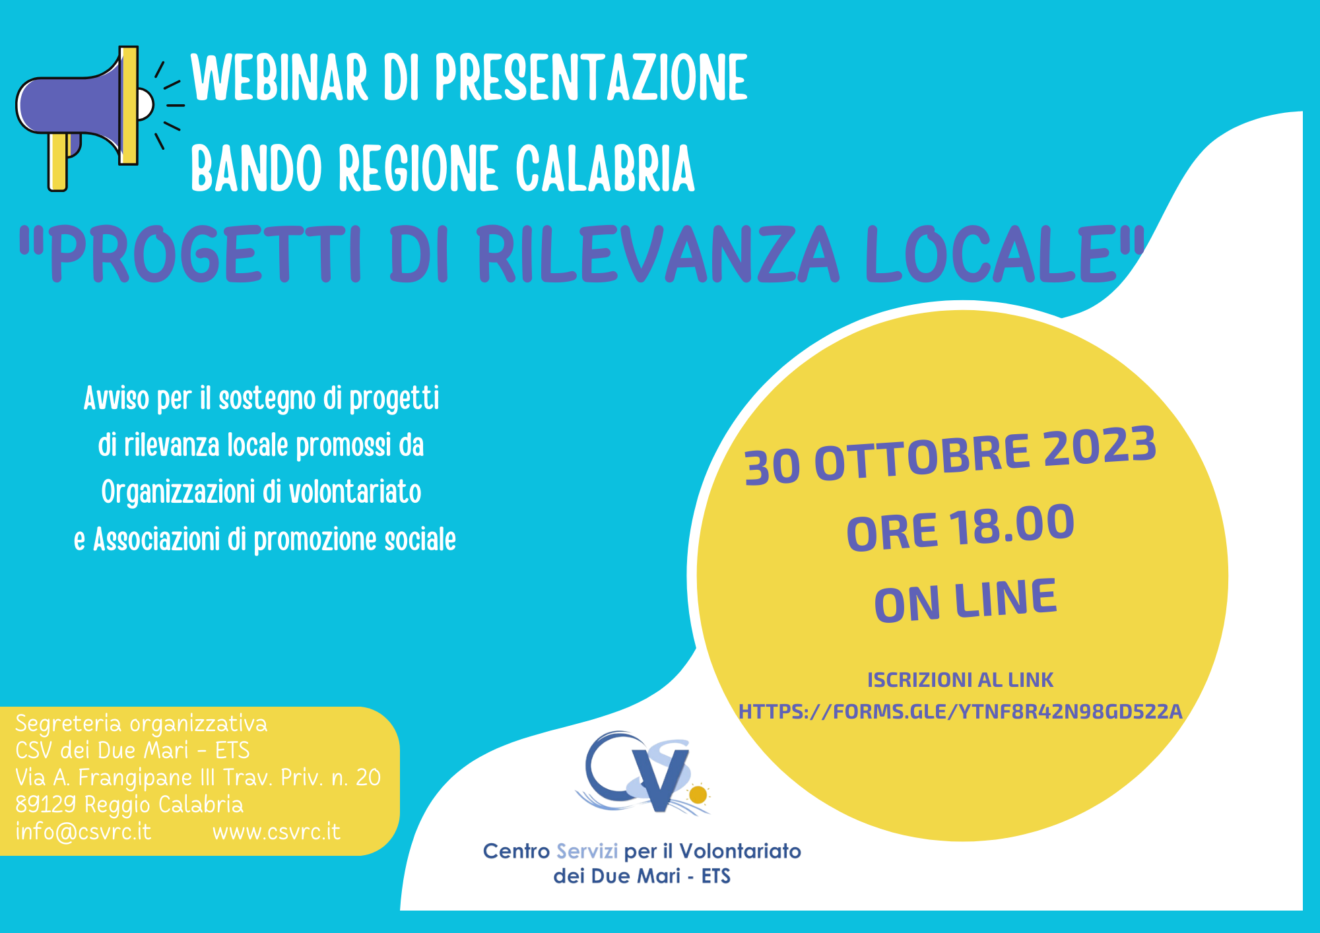 Pubblicazione Avviso Regione Calabria ＂PROGETTI DI RILEVANZA LOCALE＂ e Presentazione su Zoom